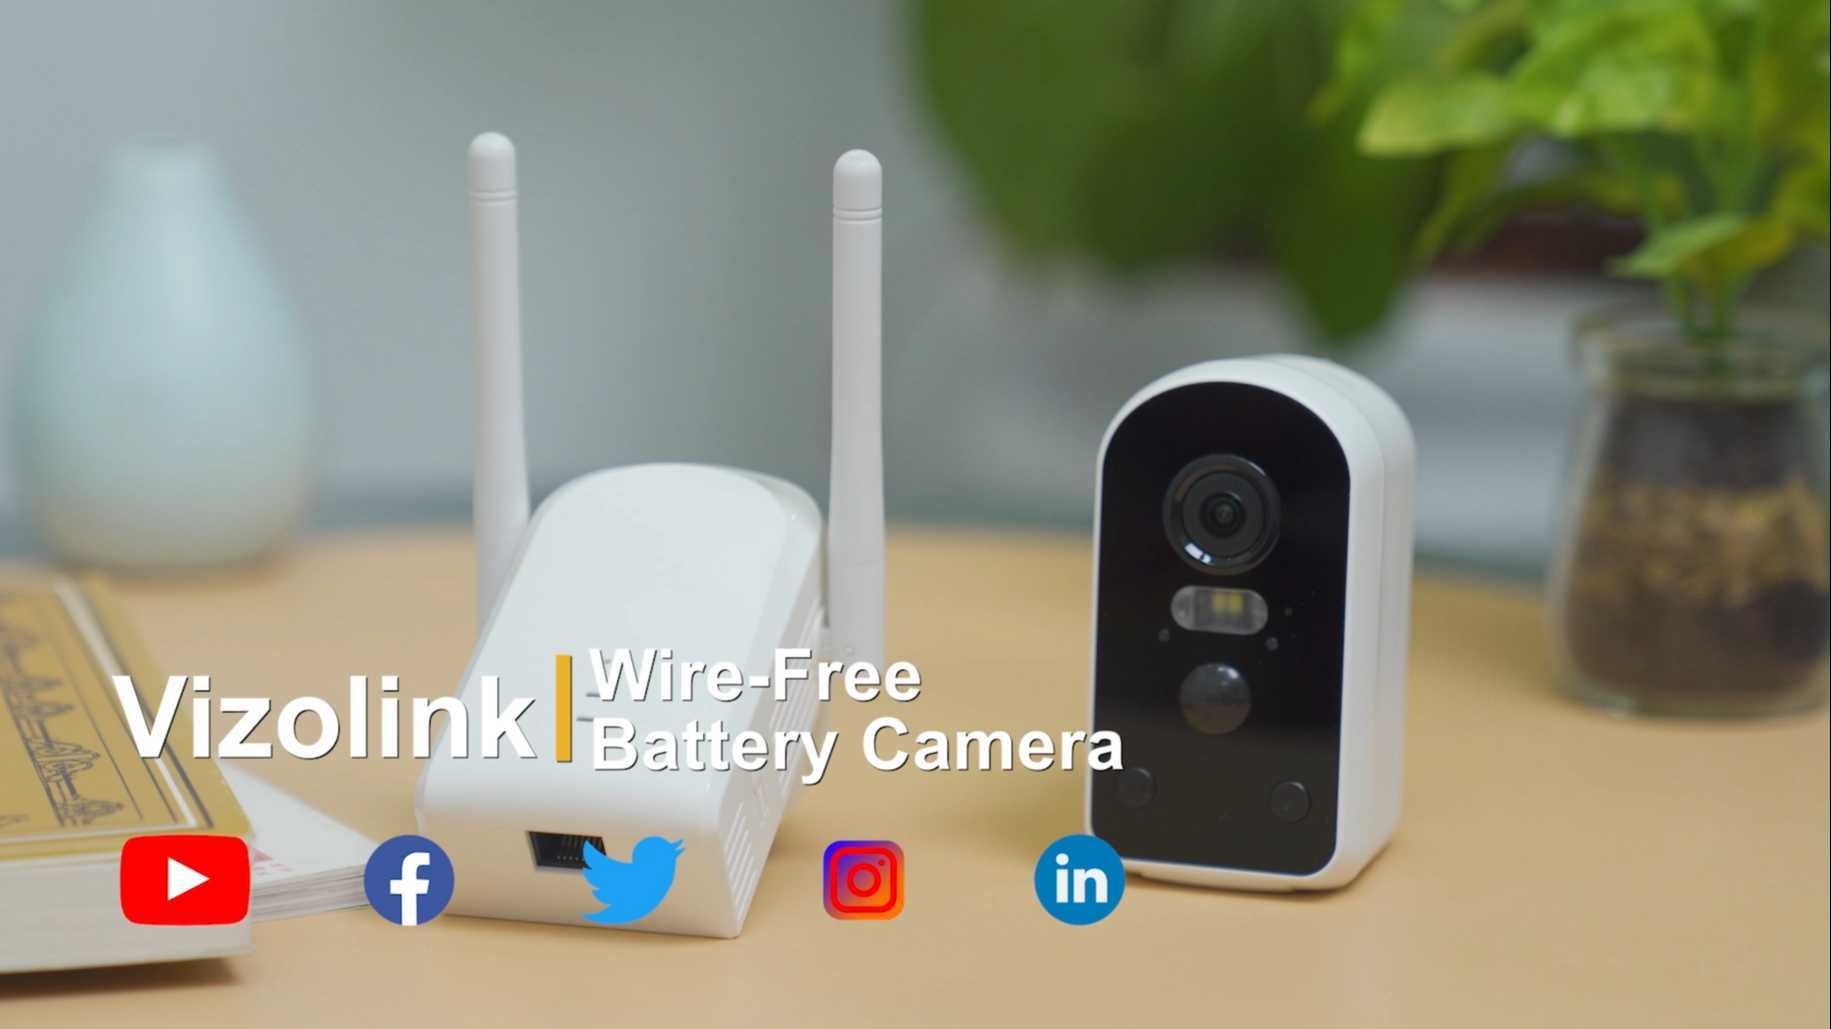 Vizolink wire-free battery camera产品宣传片